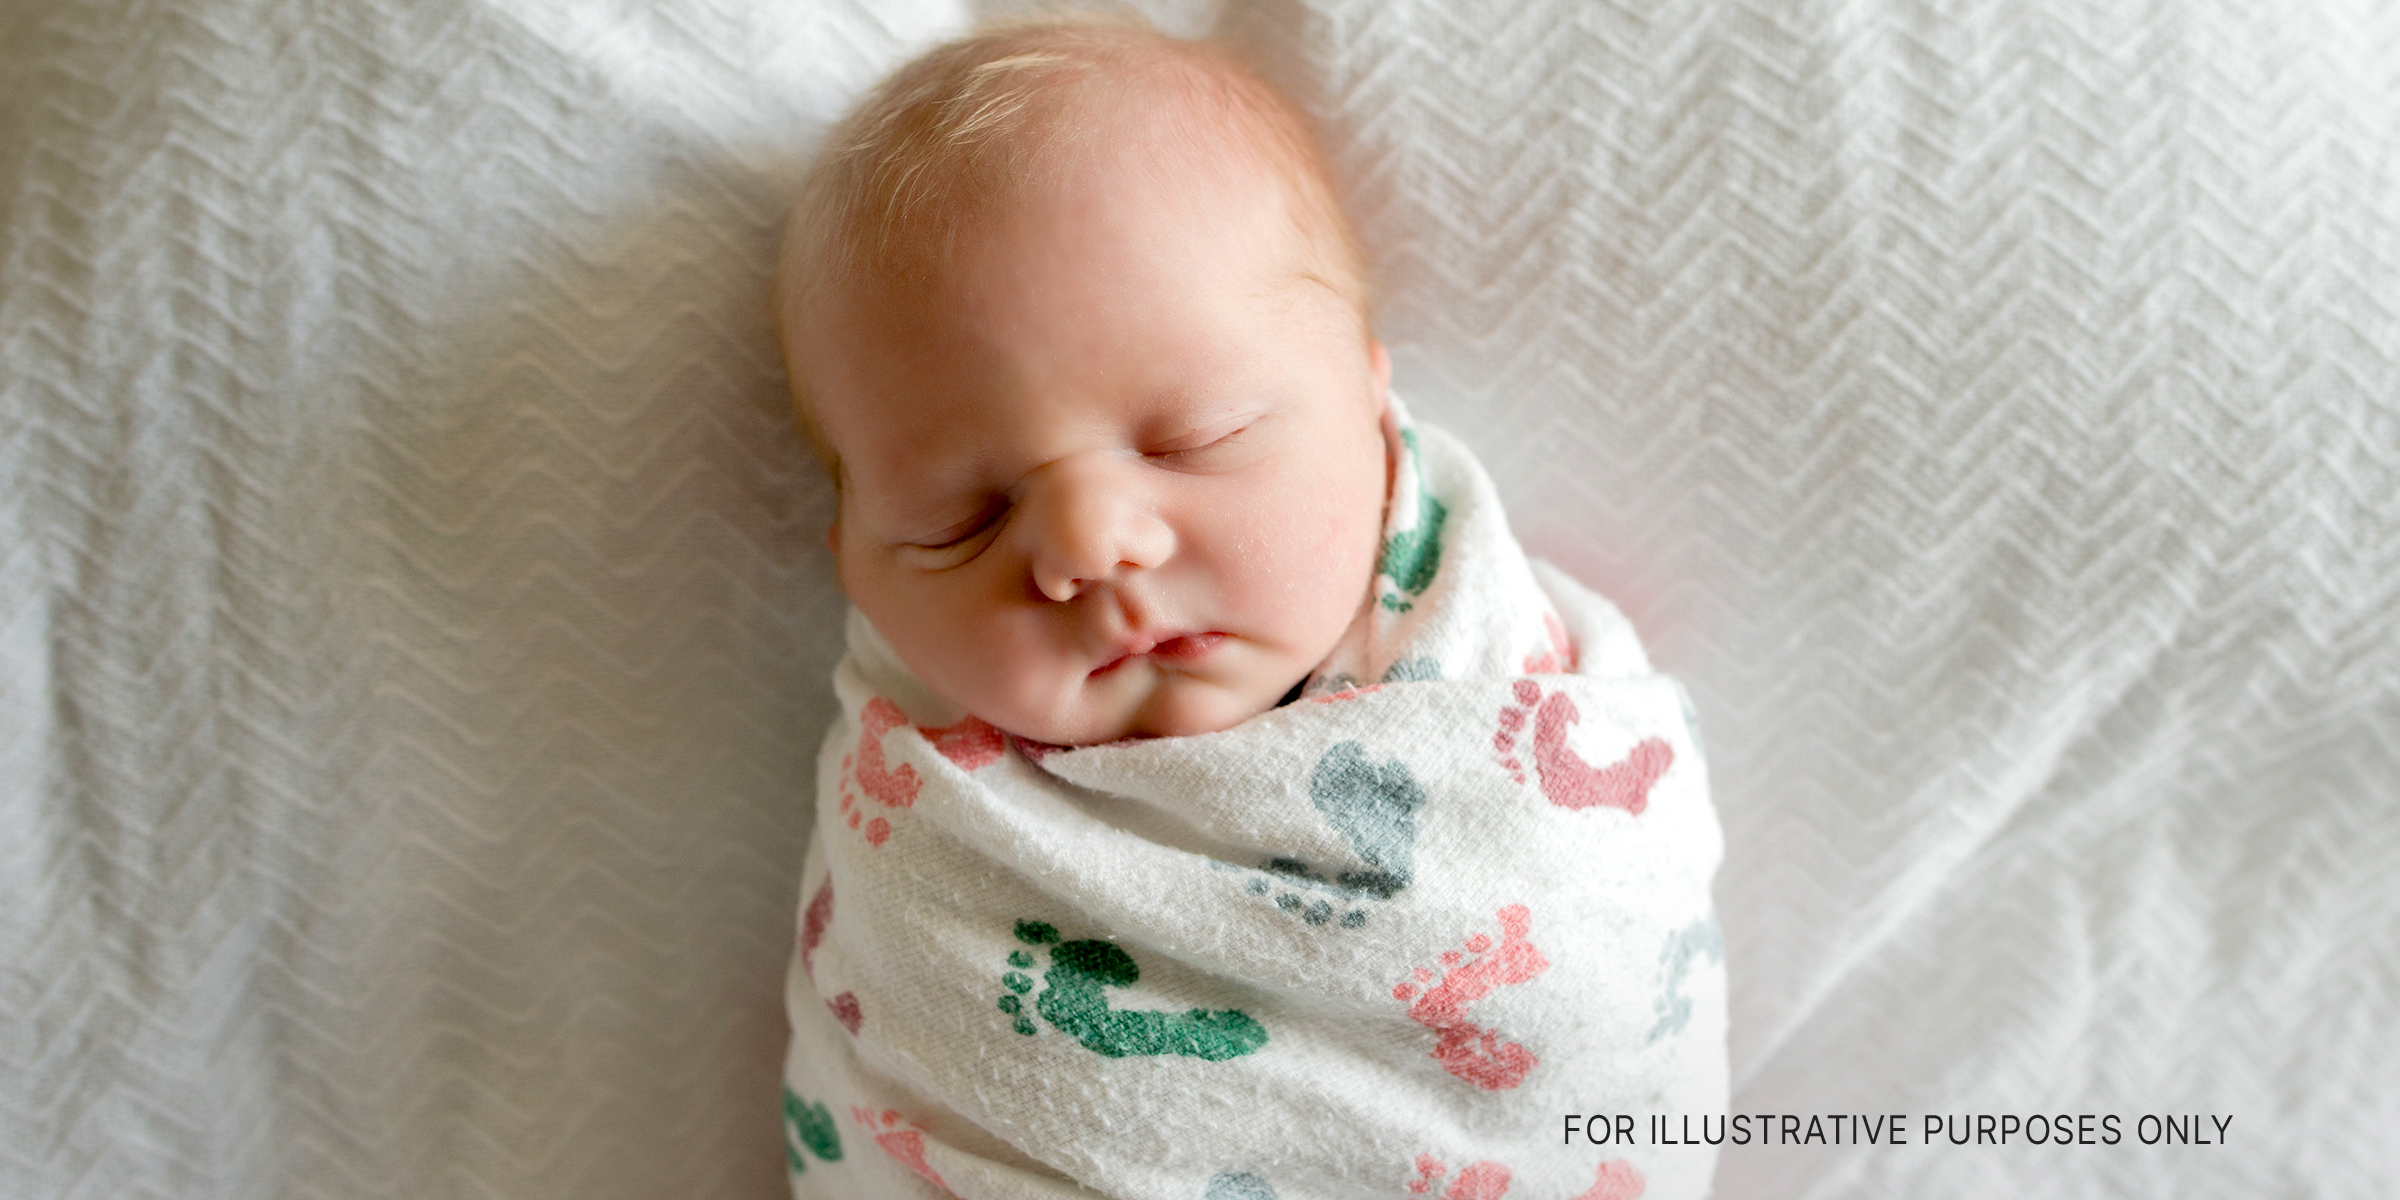 Ein neugeborenes Baby | Quelle: Shutterstock